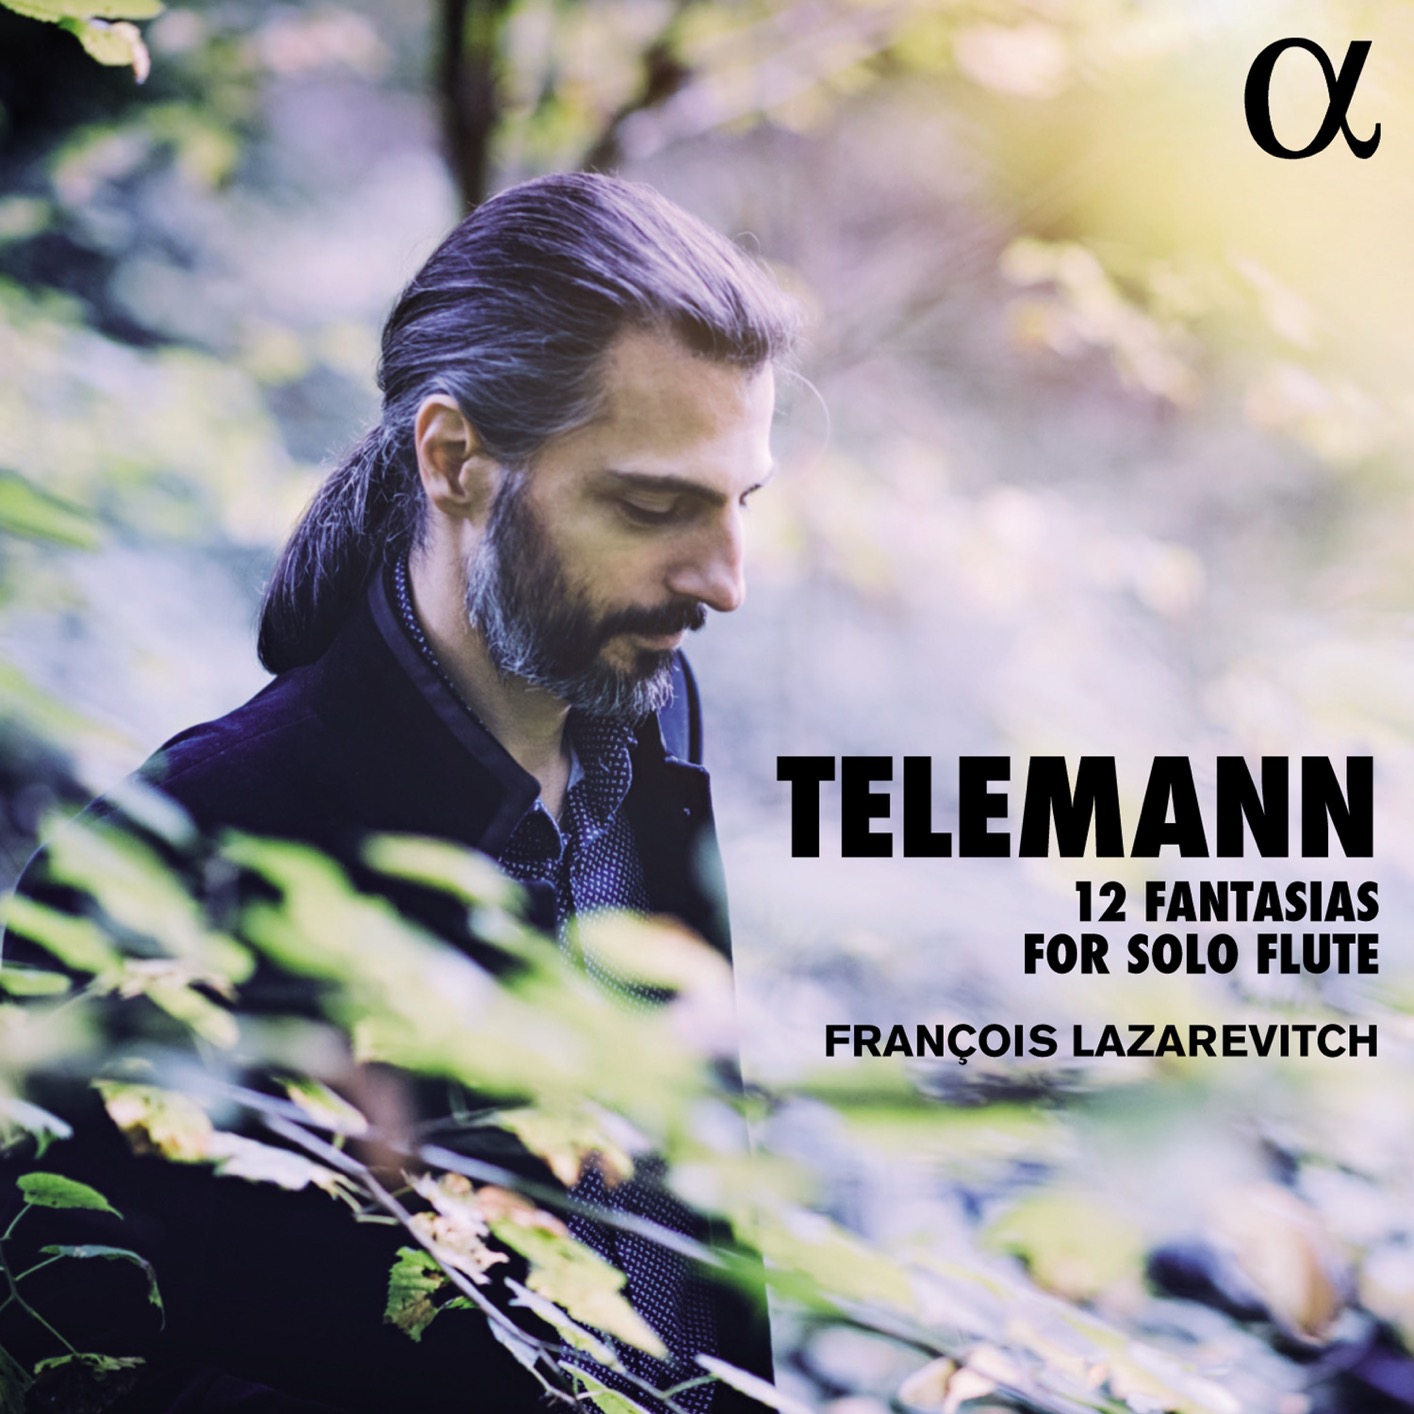 Francois Lazarevitch – Telemann: 12 Fantasias for Solo Flute (2017) [Qobuz FLAC 24bit/96kHz]